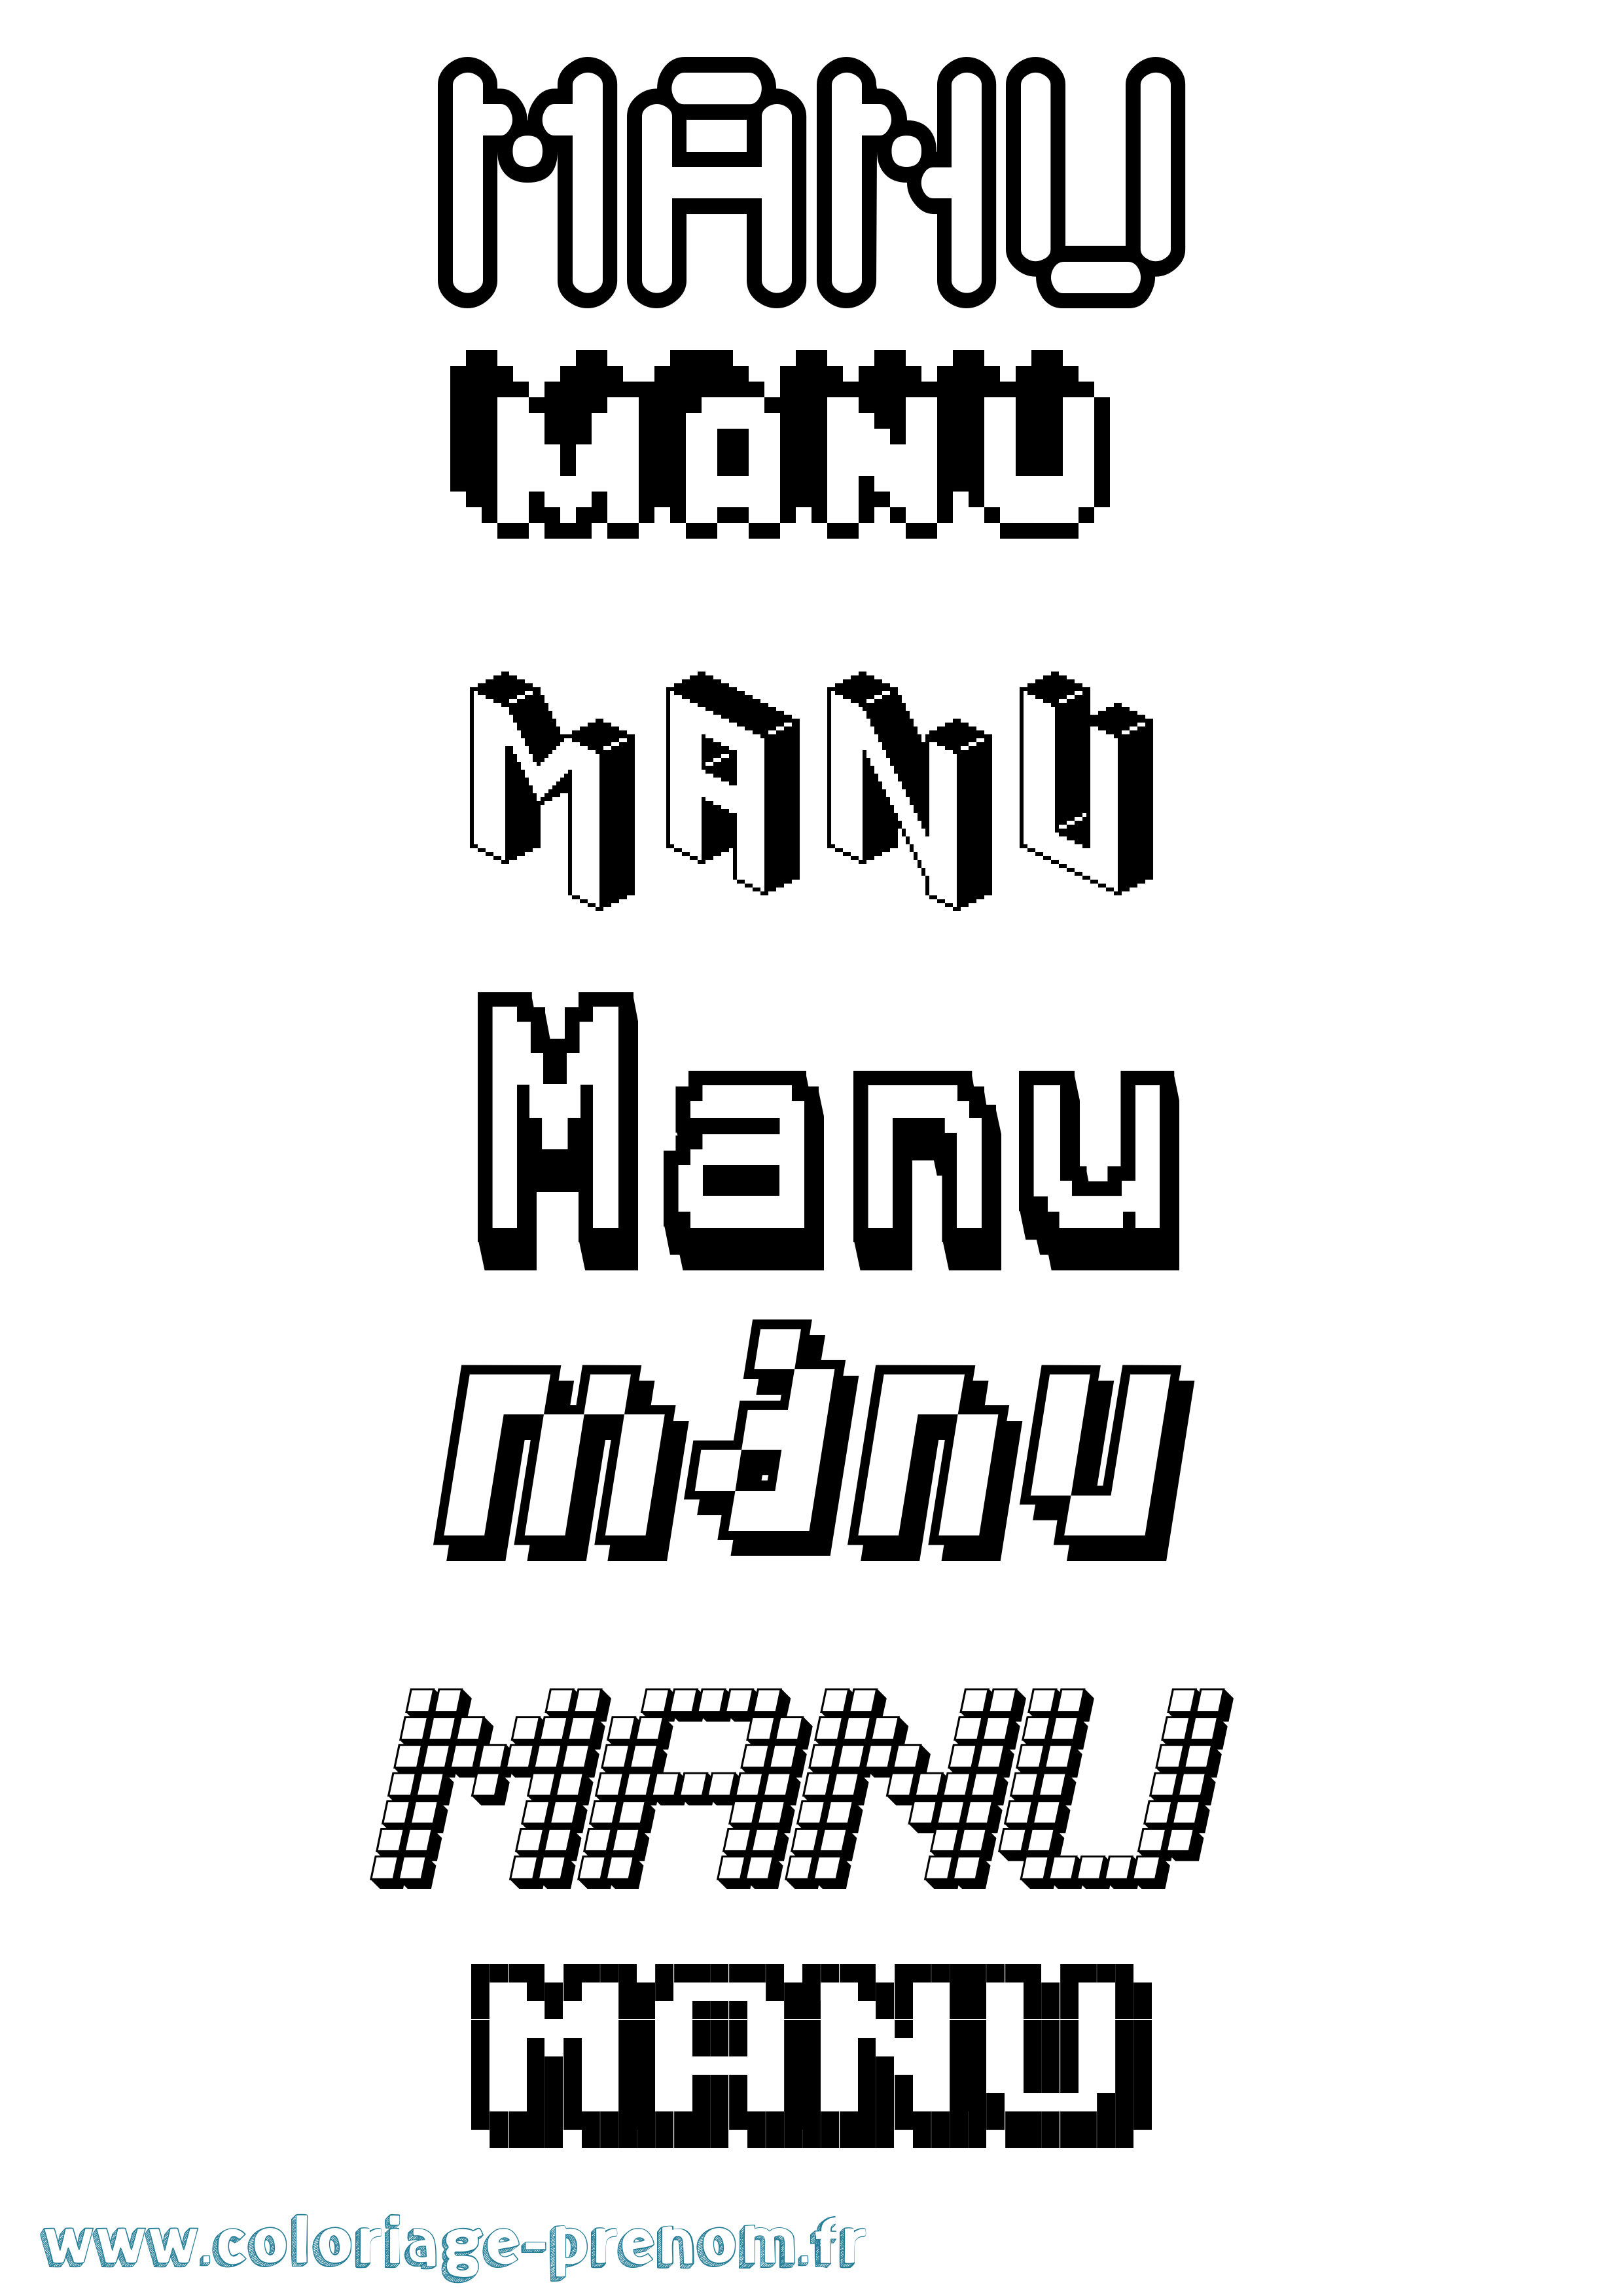 Coloriage prénom Manu Pixel